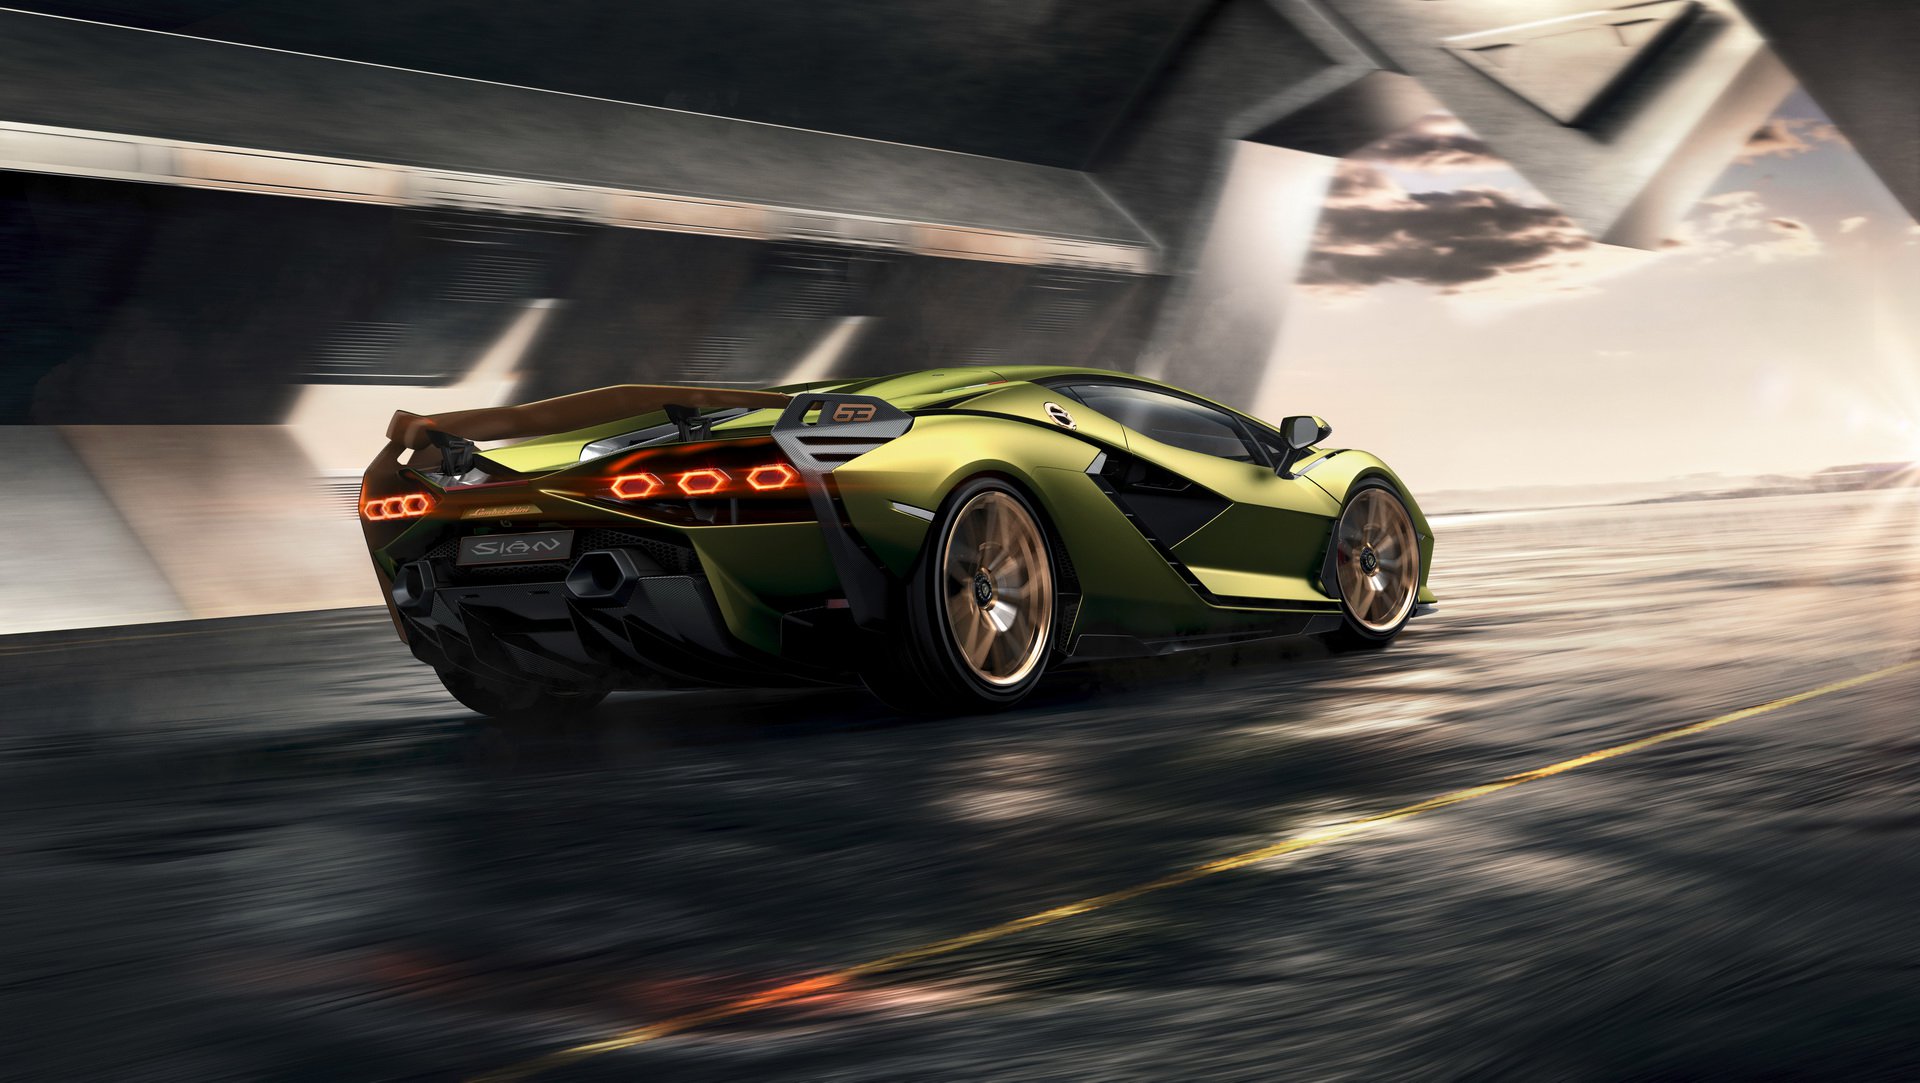 Lamborghini'nin hibrit süper otomobili Sian tanıtıldı: Gelmiş geçmiş en güçlü Lamborghini